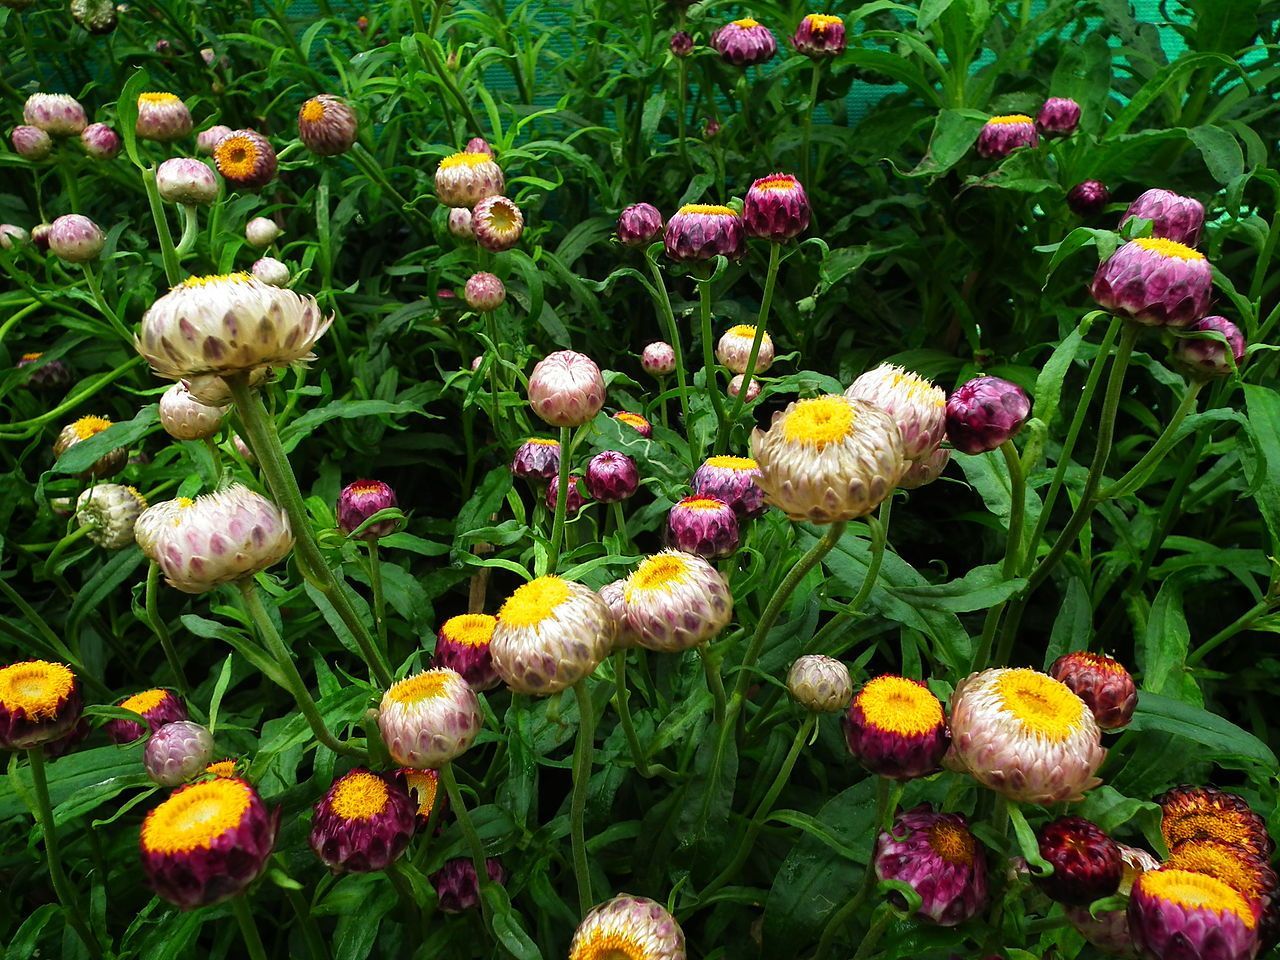 Tổng hợp những hình ảnh đẹp nhất về hoa bất tử – Loài hoa không bao giờ chết - [Kích thước hình ảnh: 1280x960 px]